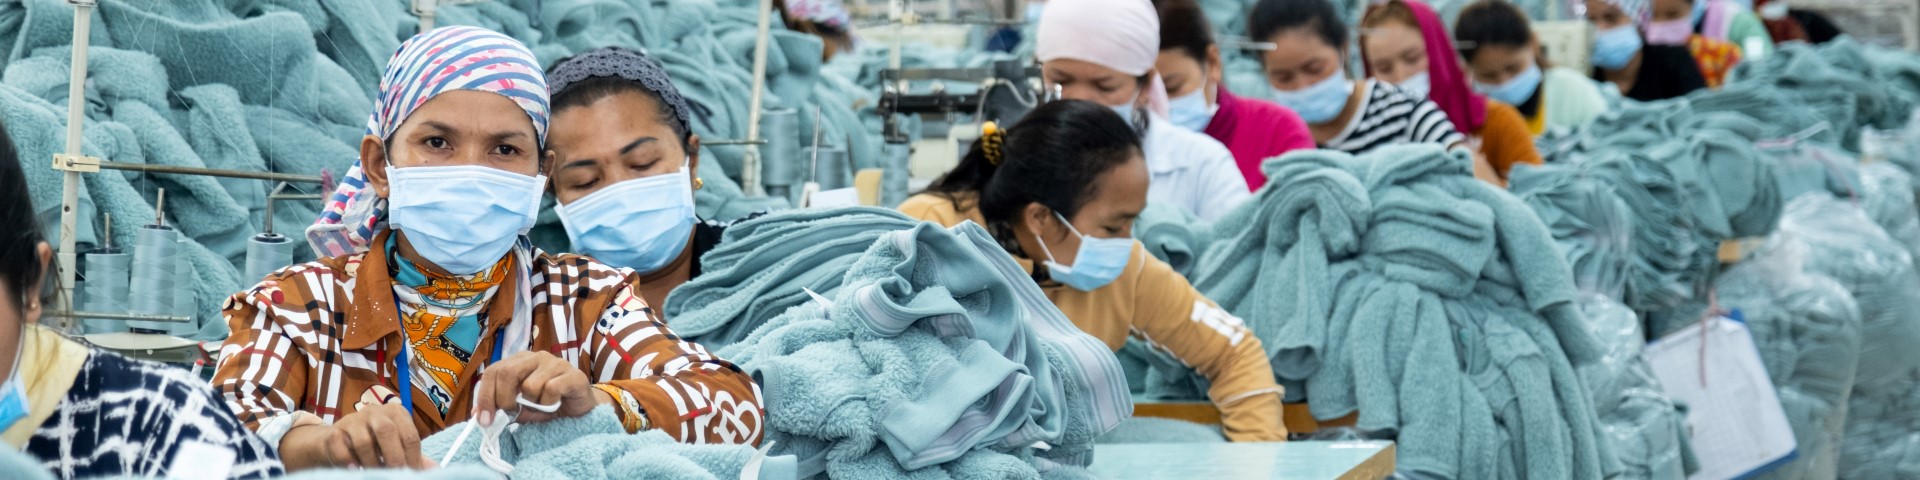 Arbeiterinnen nähen Kleidungsstücke in einer Textilfabrik. Copyright: GIZ/Roman König